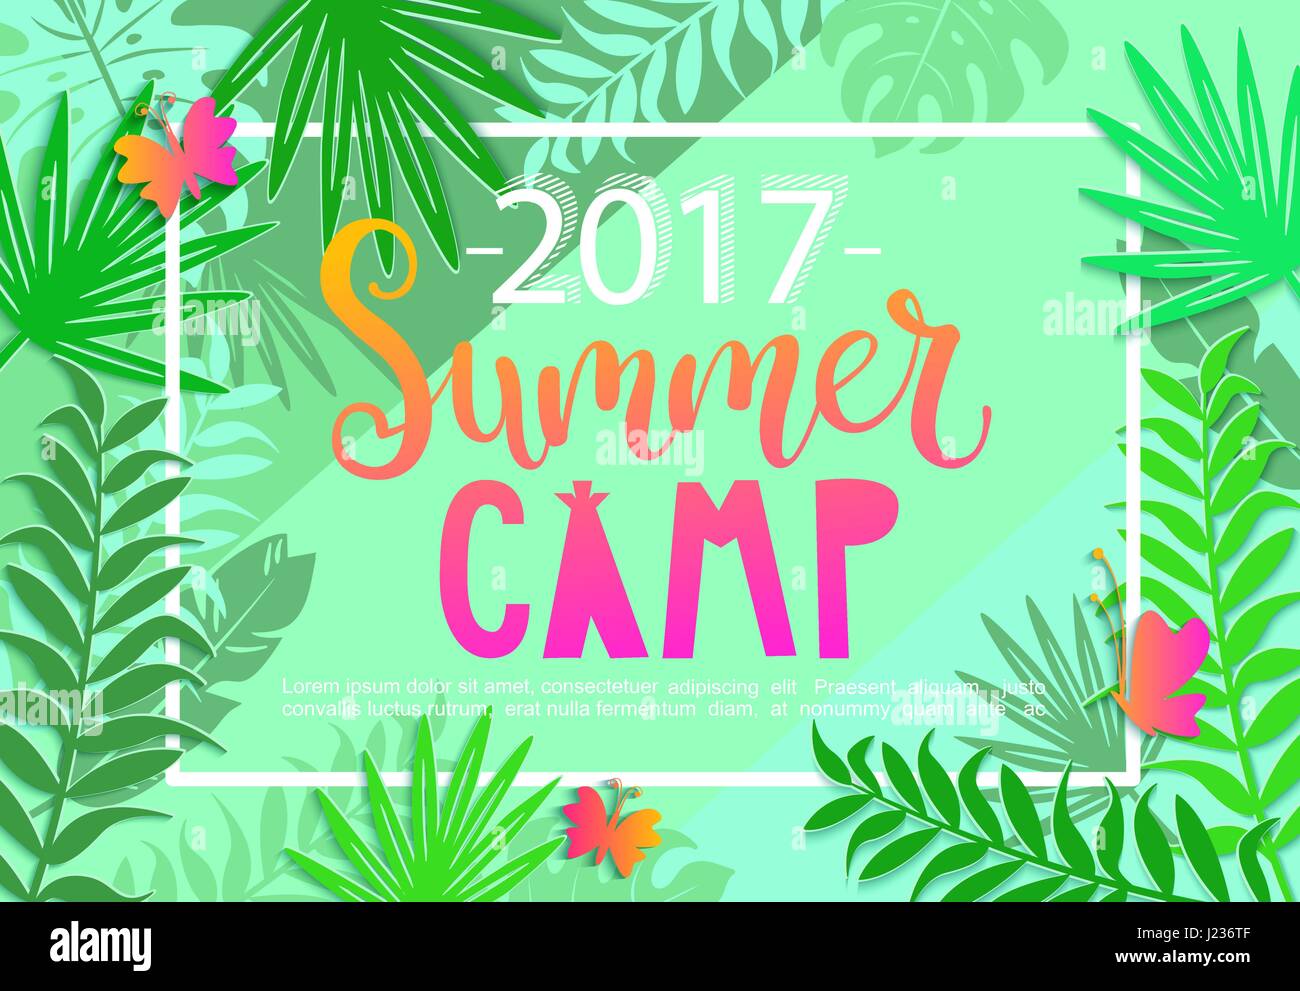 Summer Camp 2017 scritte su sfondo nella giungla tropicale con foglie e farfalle. Illustrazione Vettoriale. Illustrazione Vettoriale